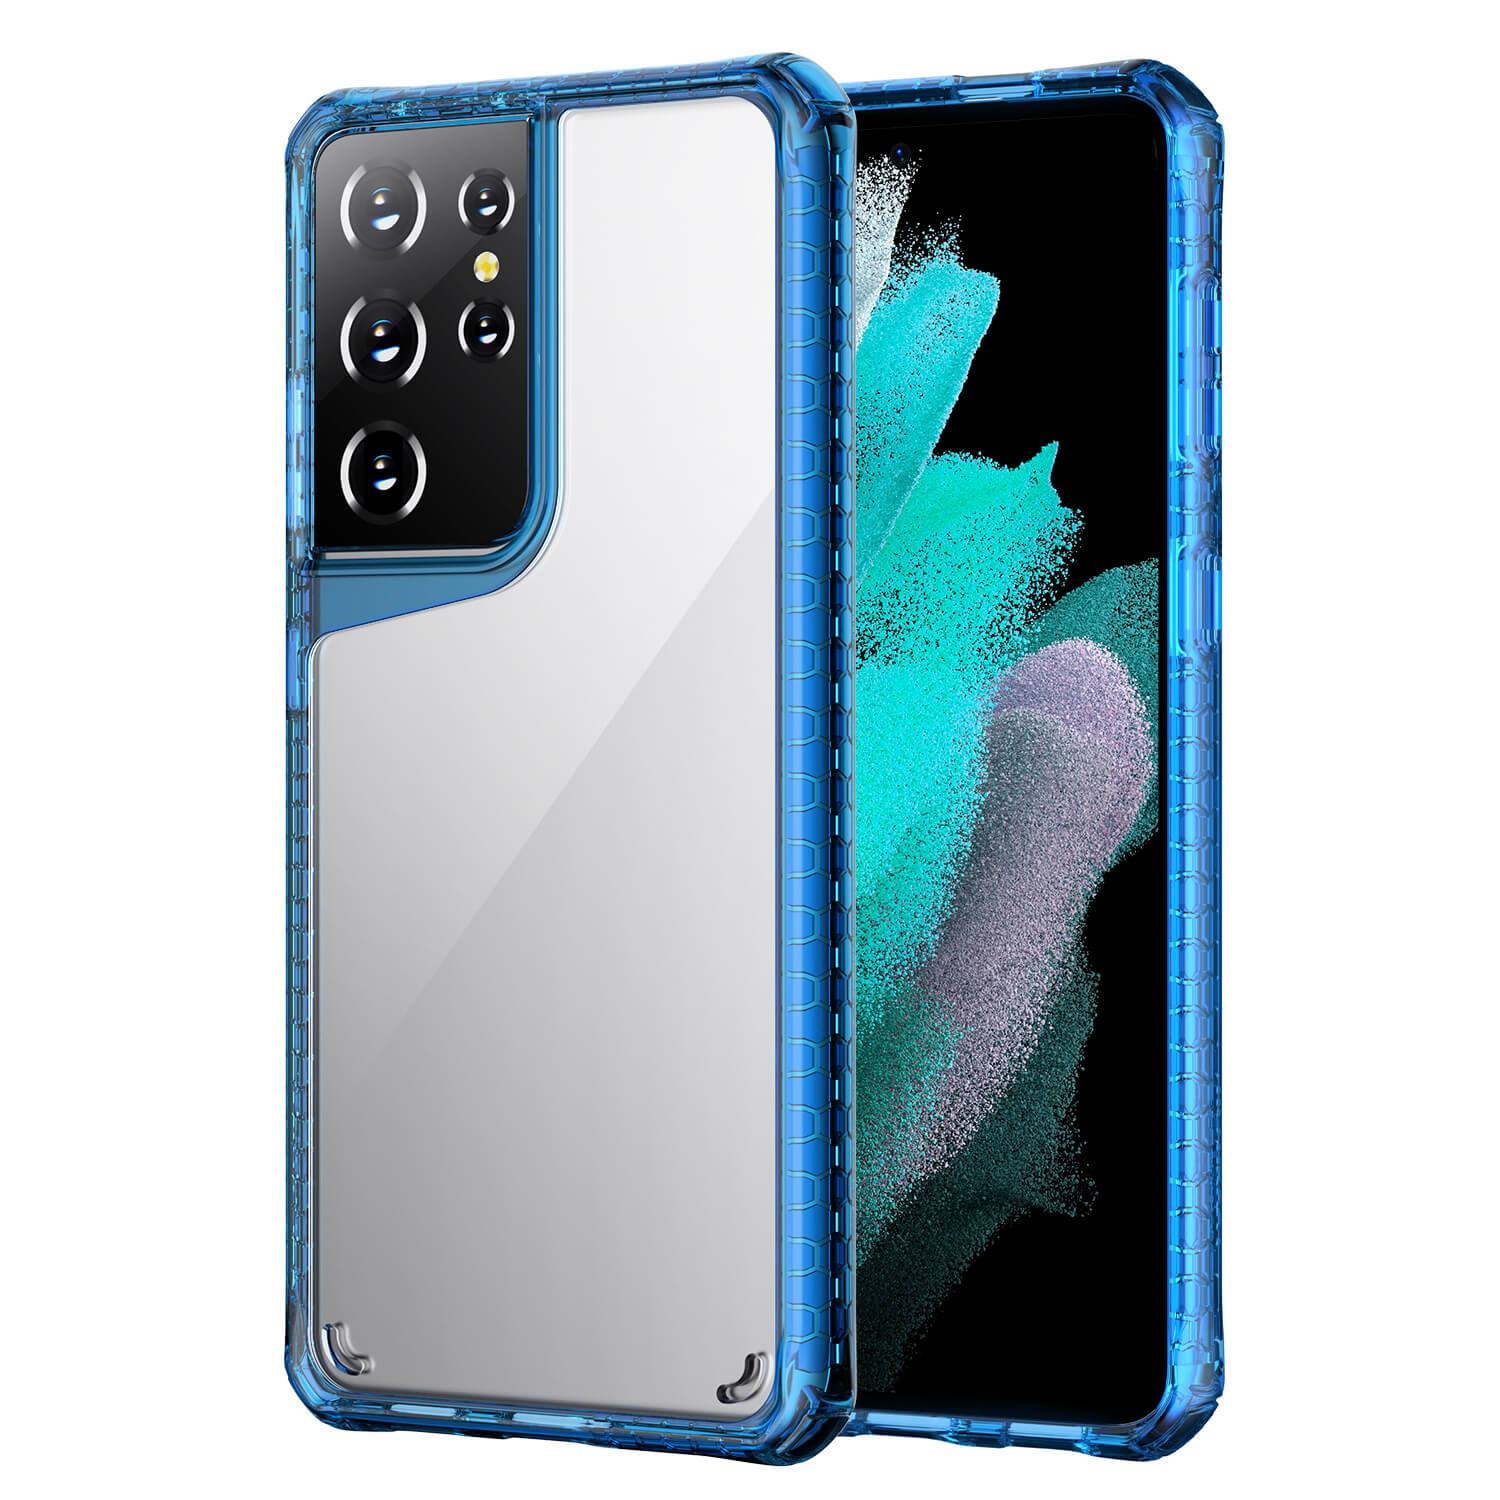 Samsung S21 Ultra Case Tough On Tough Air Blue